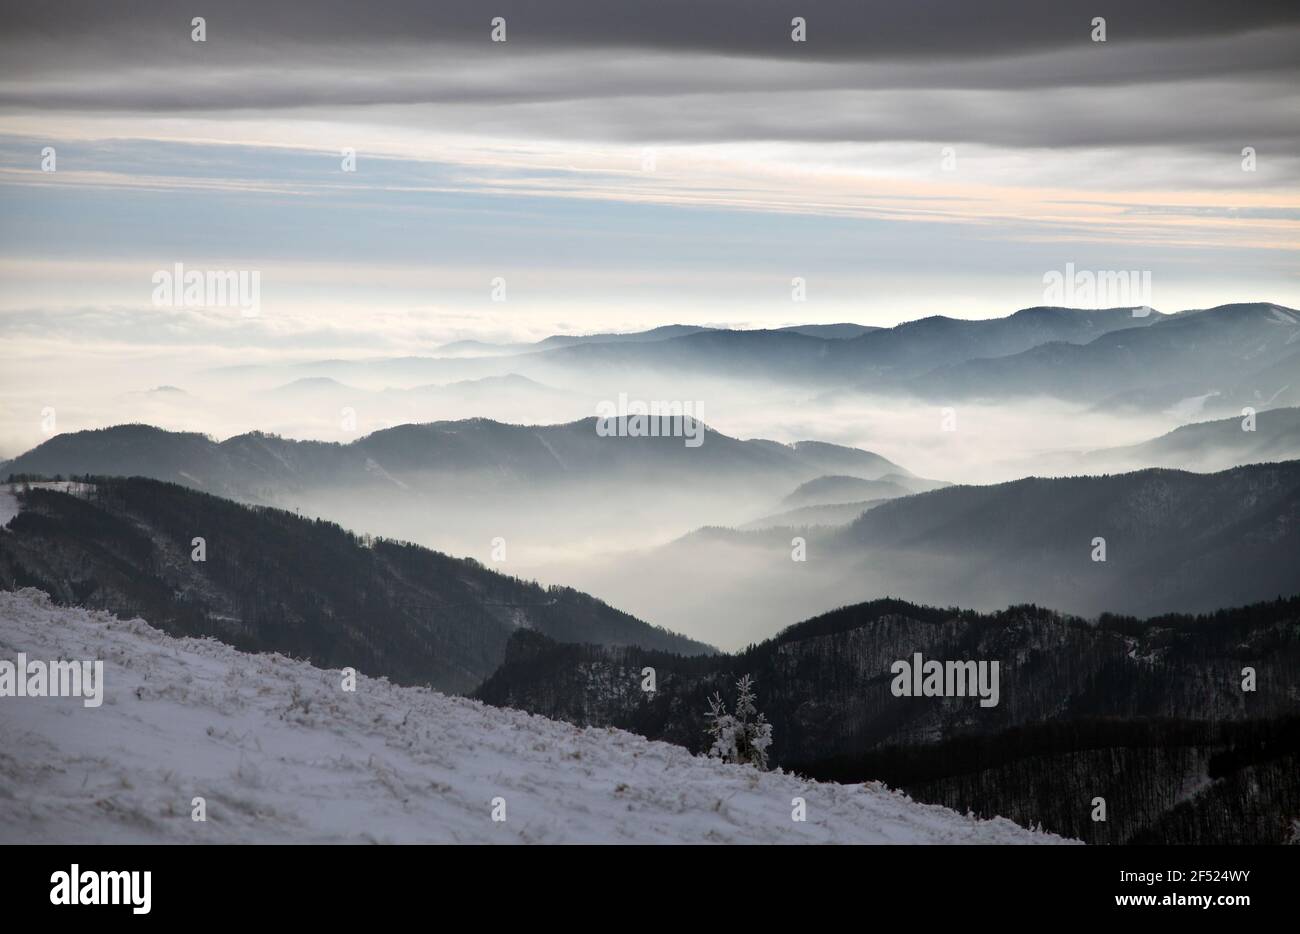 montagne, nuages et horizons - vue de Velka Fatra - Slovaquie Banque D'Images